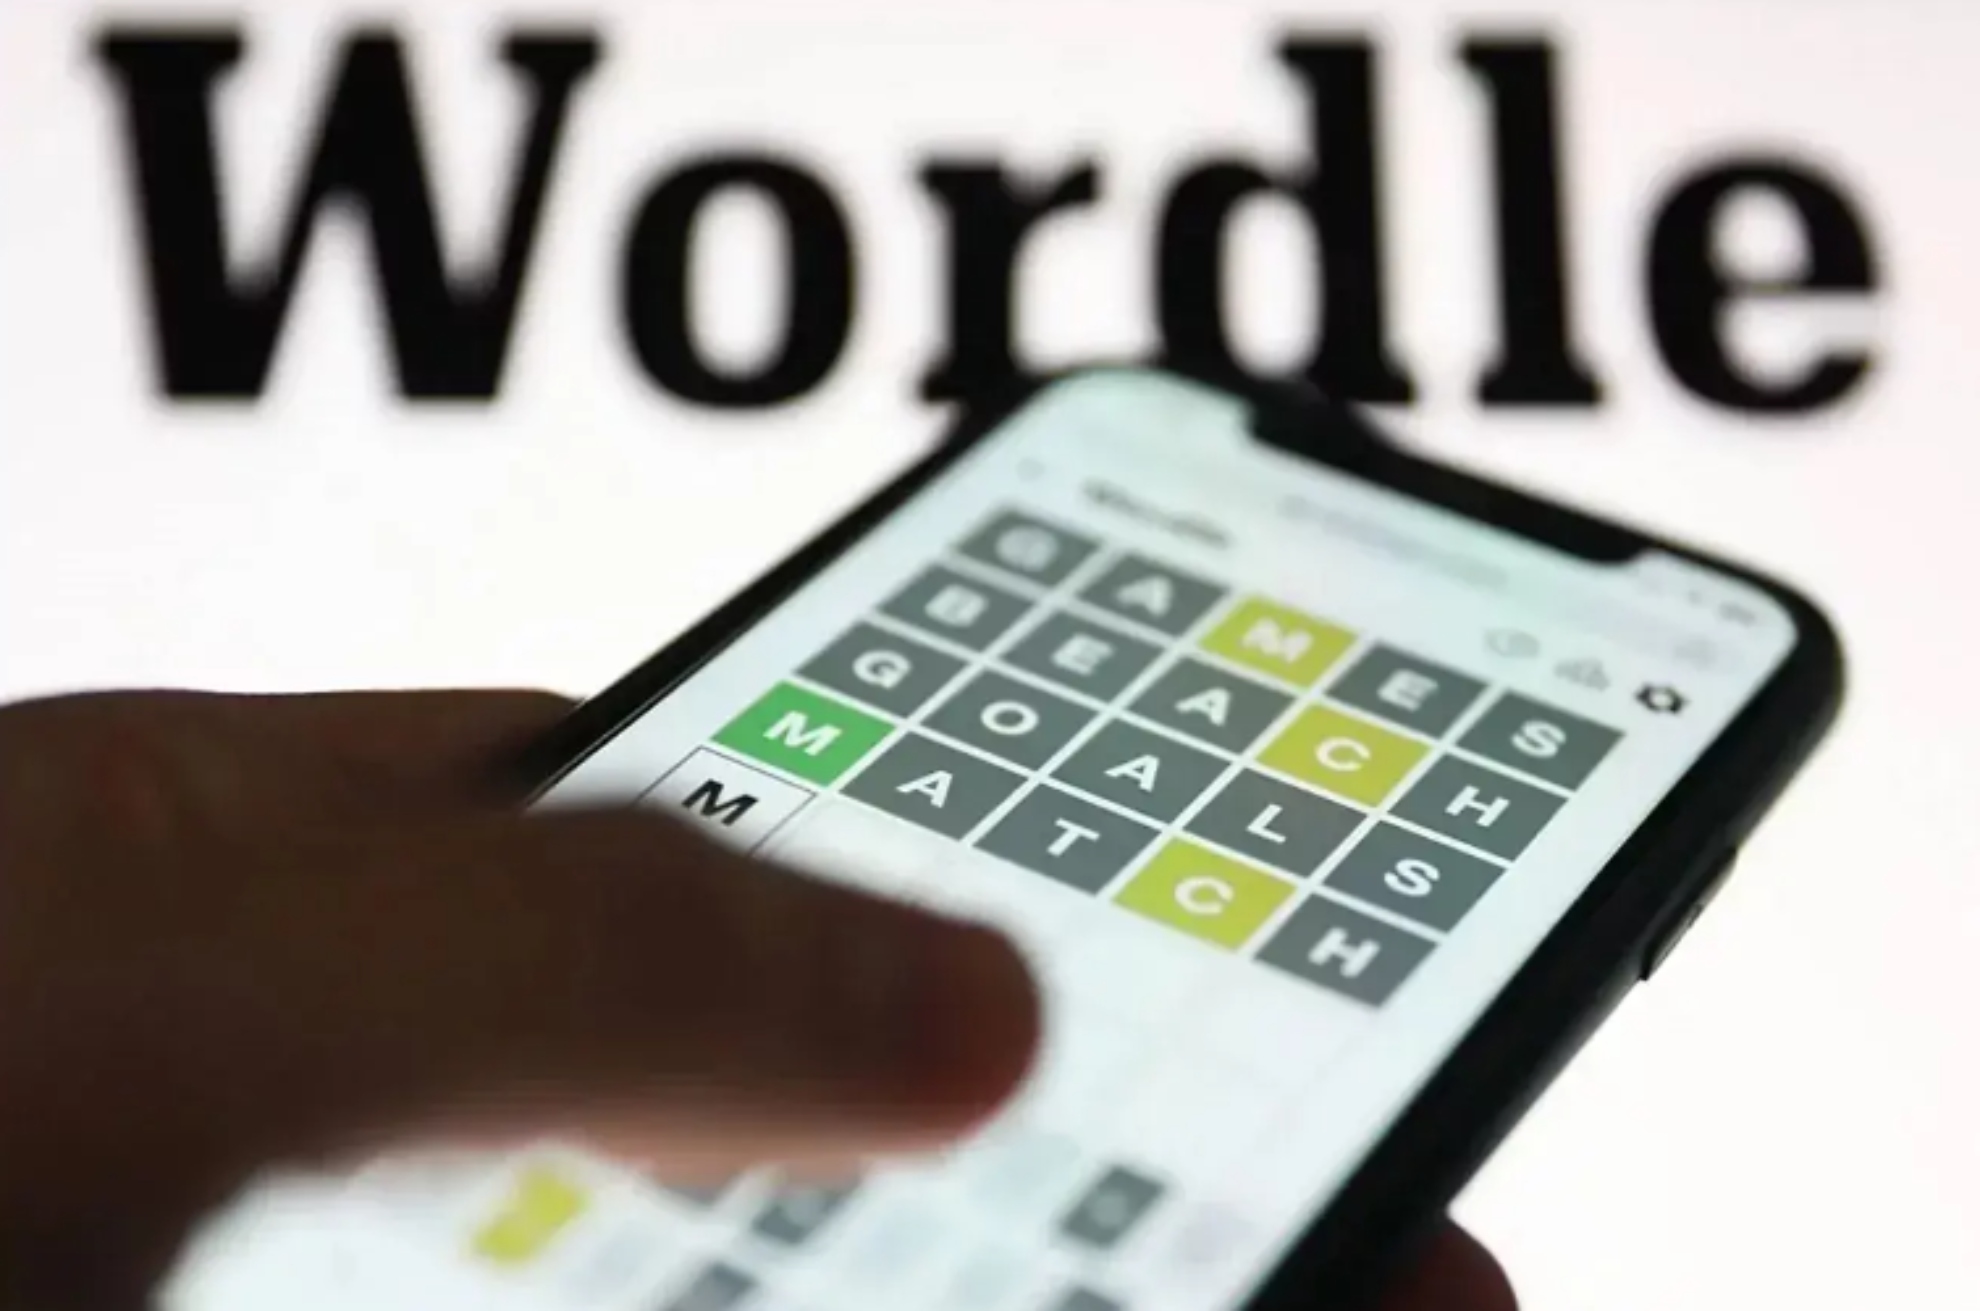 Wordle espaol hoy, 24 de abril: normal, tildes y cientfico | Soluciones y pistas para adivinar la palabra